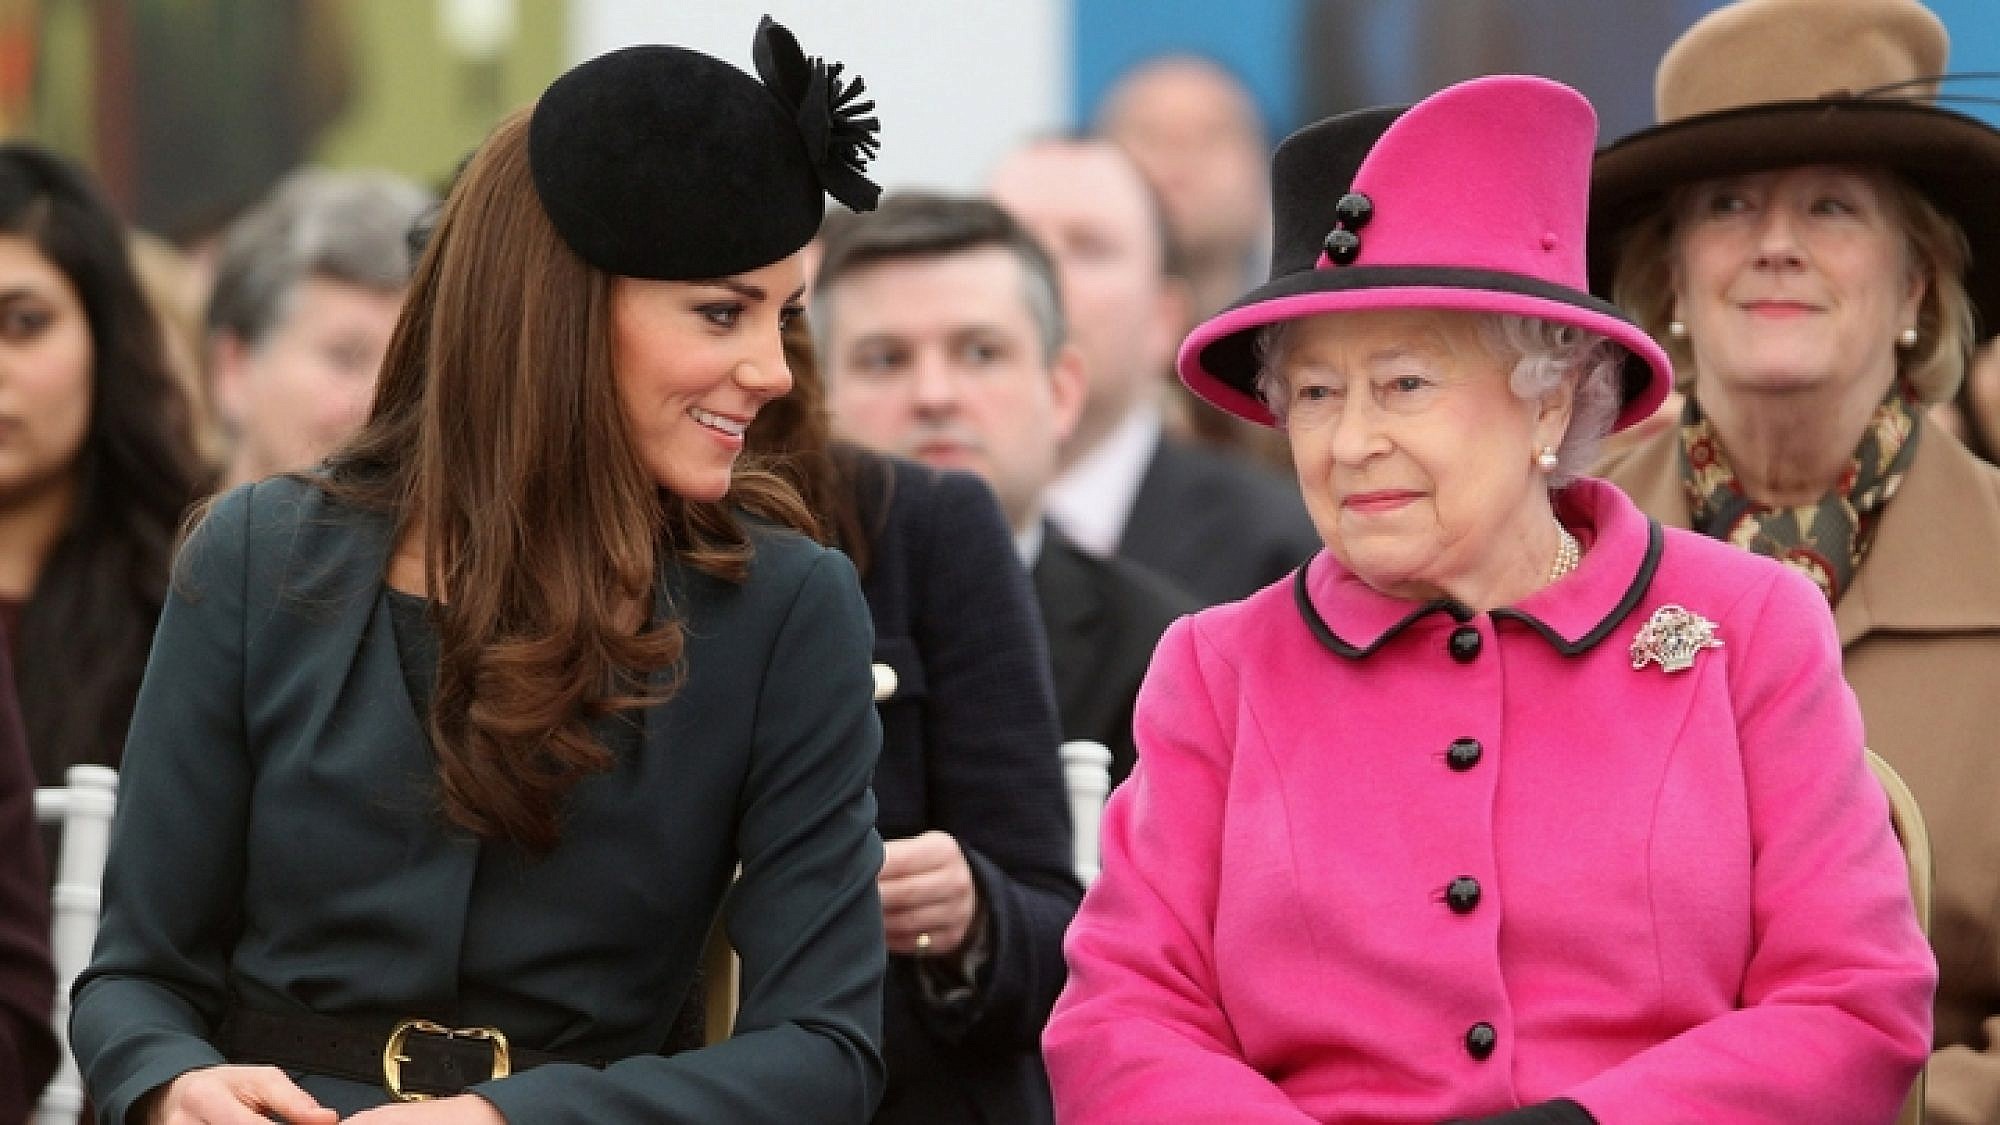 "בתכל'ס אני יותר שיקית פה מכולם": המלכה אליזבת וקייט מידלטון | צילום: Gettyimages